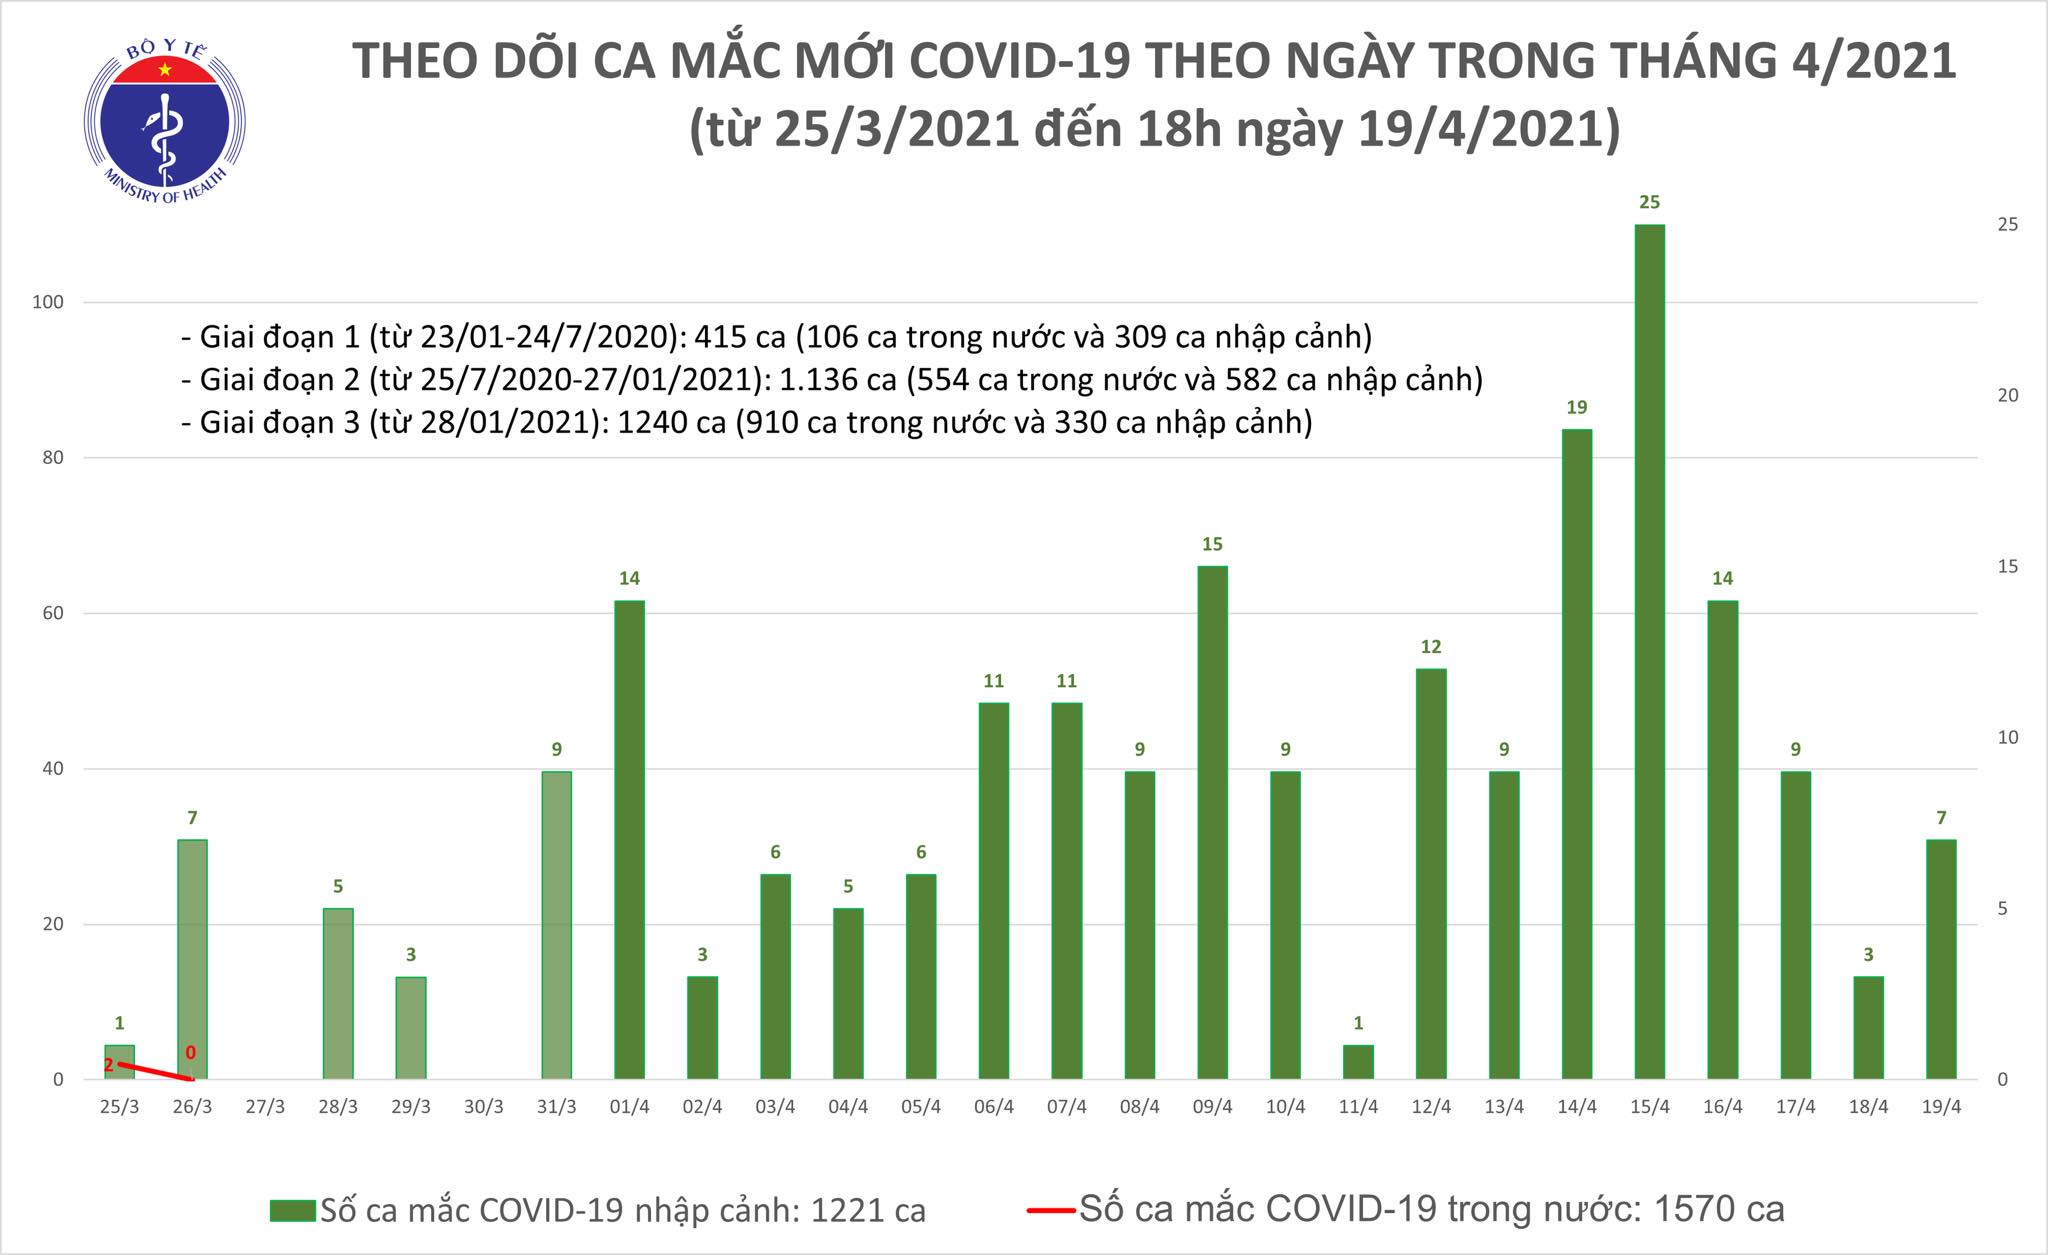 Chiều 19/4: Thêm 6 ca mắc COVID-19 tại Tây Ninh và 3 địa phương khác - Ảnh 1.